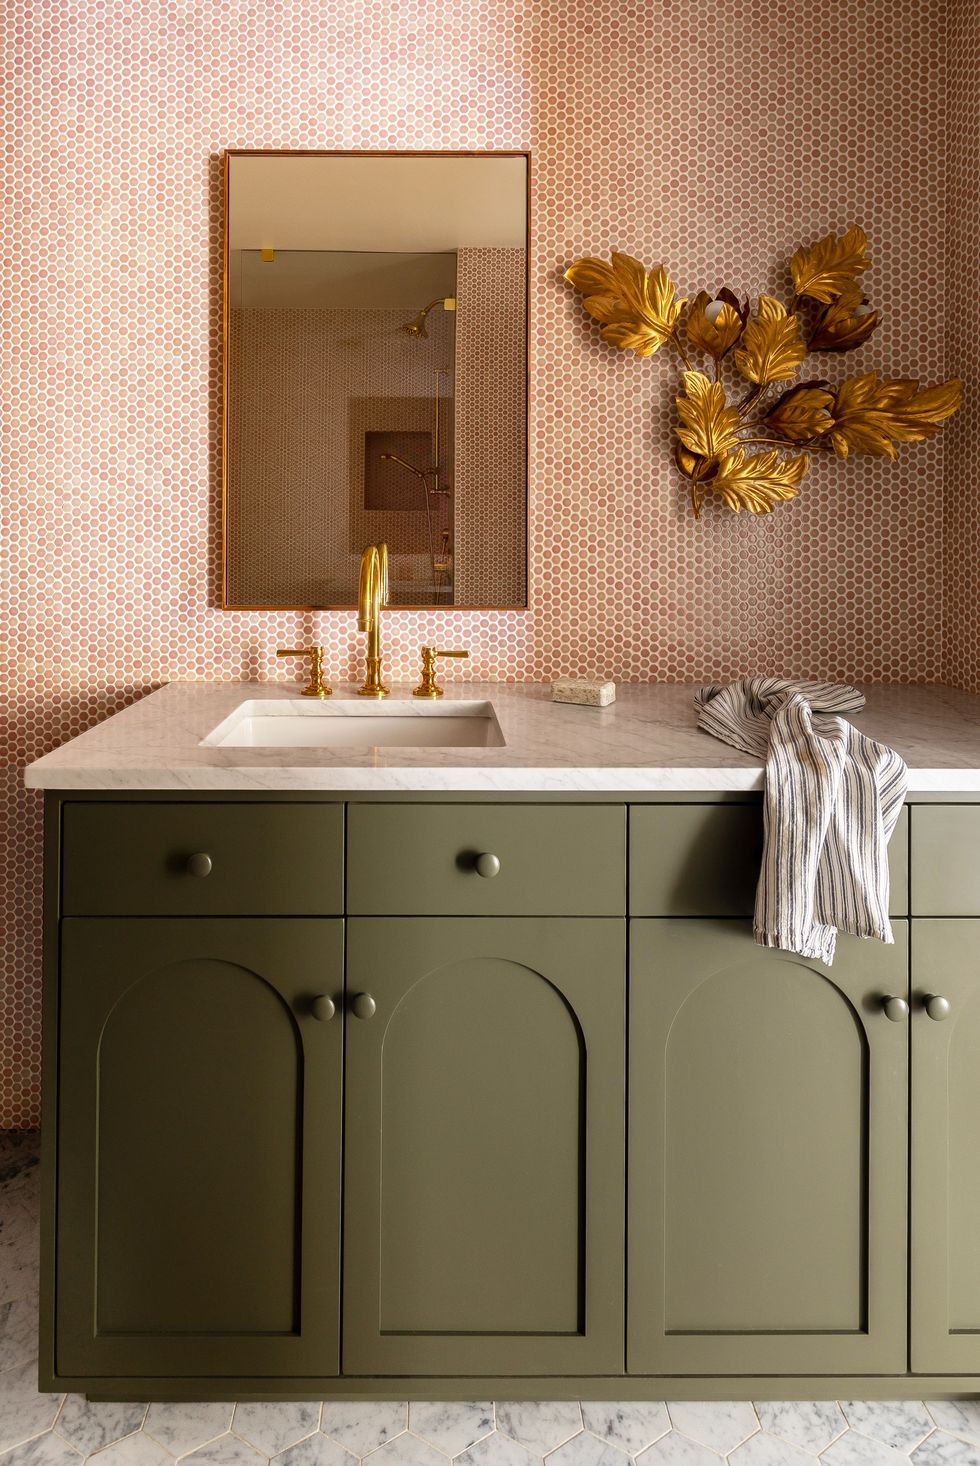 hình ảnh phòng tắm hiện đại với gạch tổ ong màu cam, gạch sàn bằng đá cẩm thạch trắng, đèn tường màu vàng nổi bật